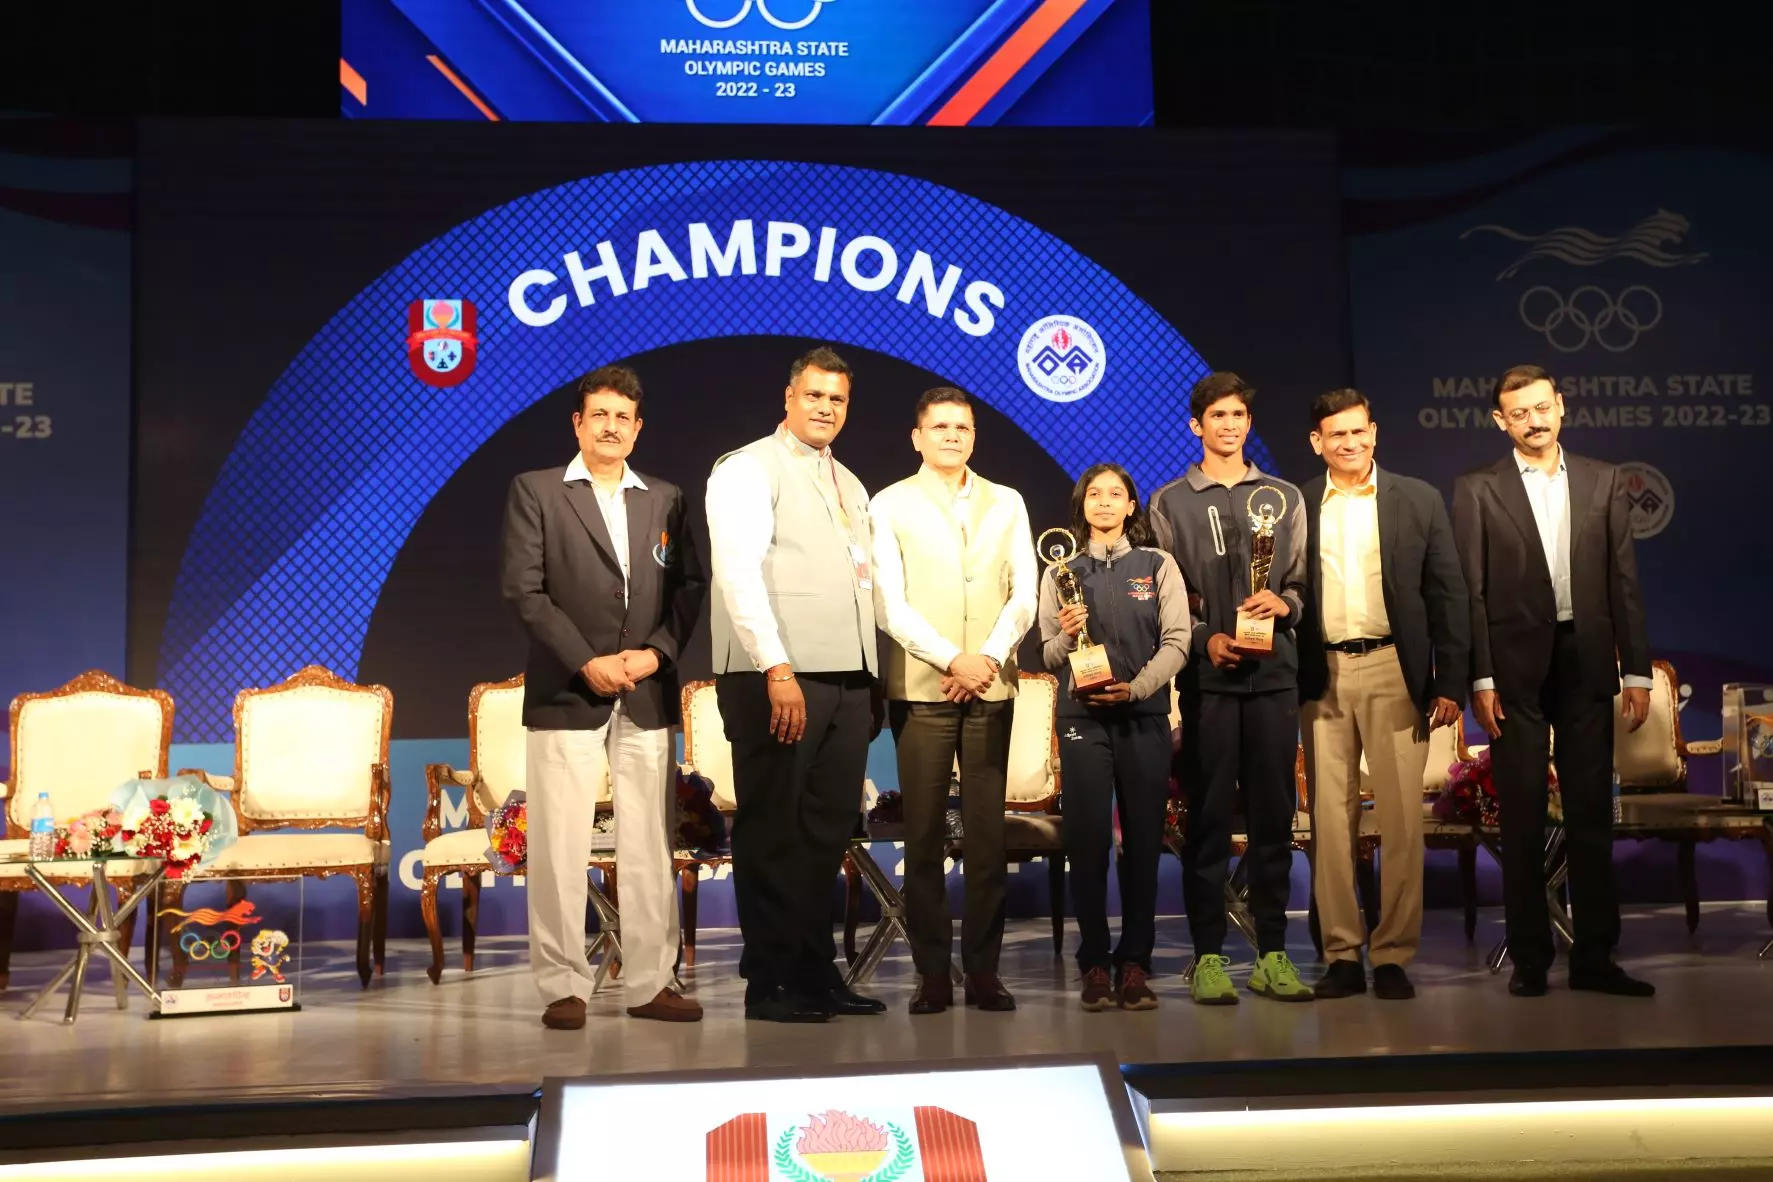 ठाणे के ऋषभ दास और पुणे की श्रद्धा तालेकर प्रतियोगिता के सर्वश्रेष्ठ एथलीट चुने गए